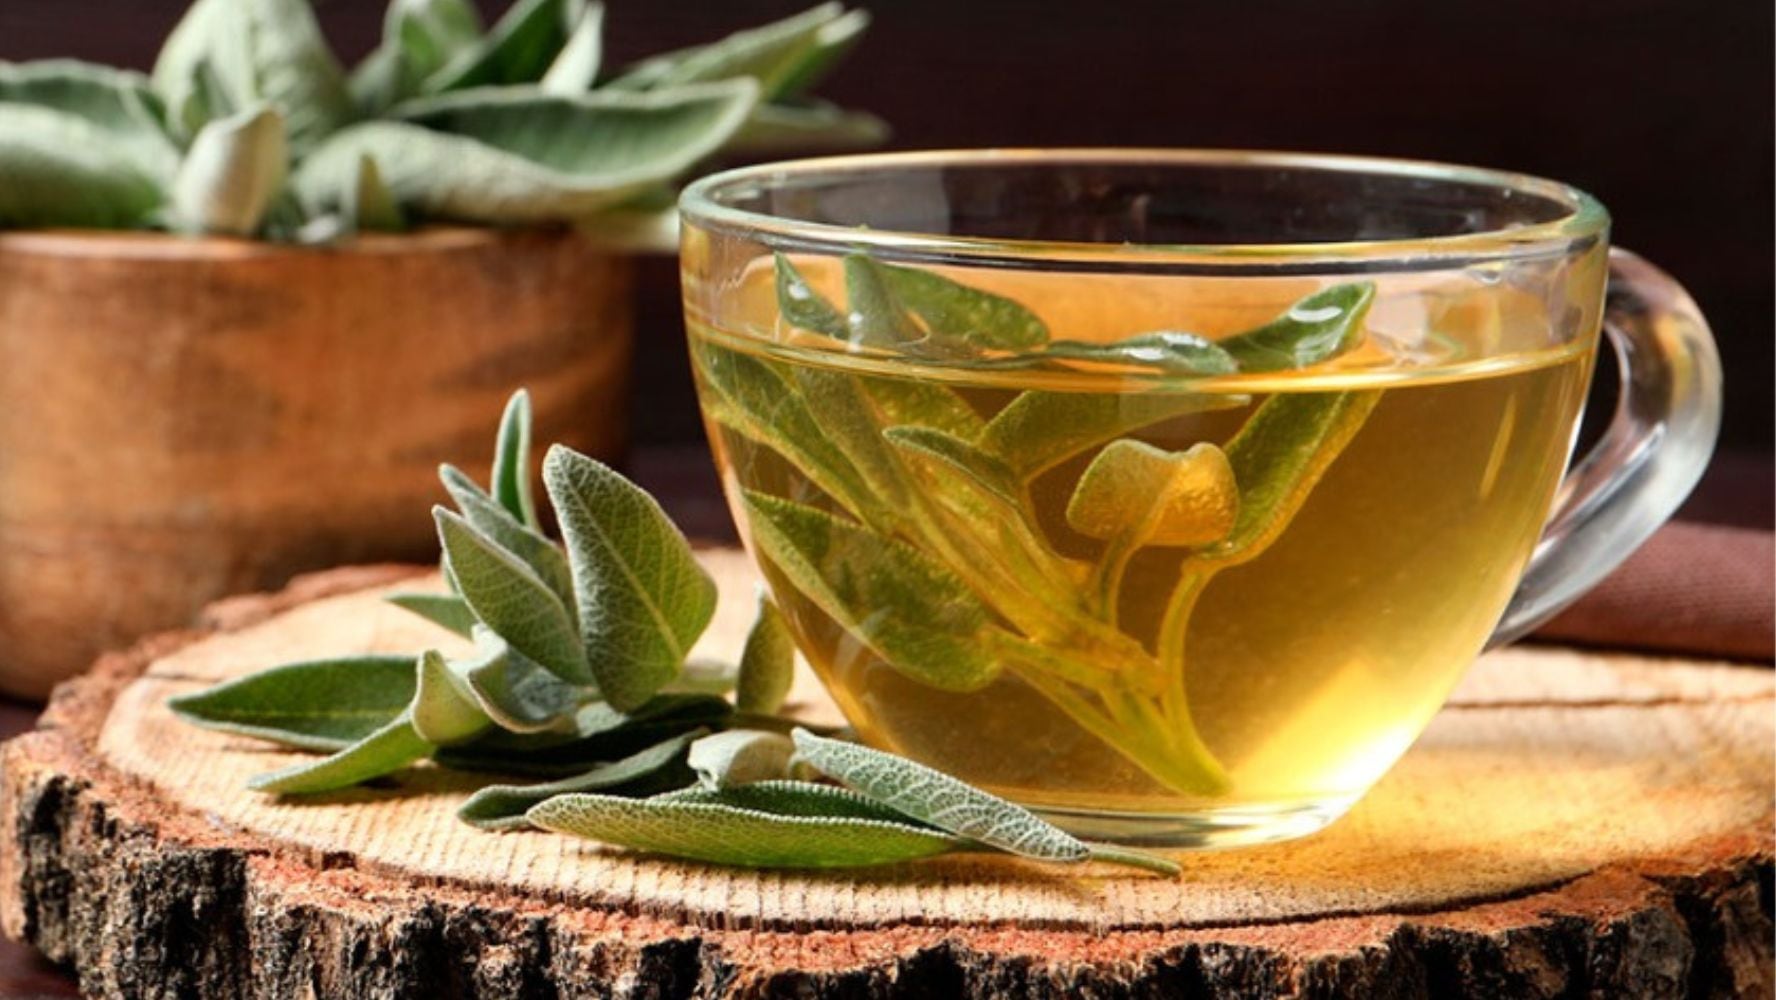 En grandes cantidades, el té de salvia perjudica a la salud. (Foto: Shutterstock)